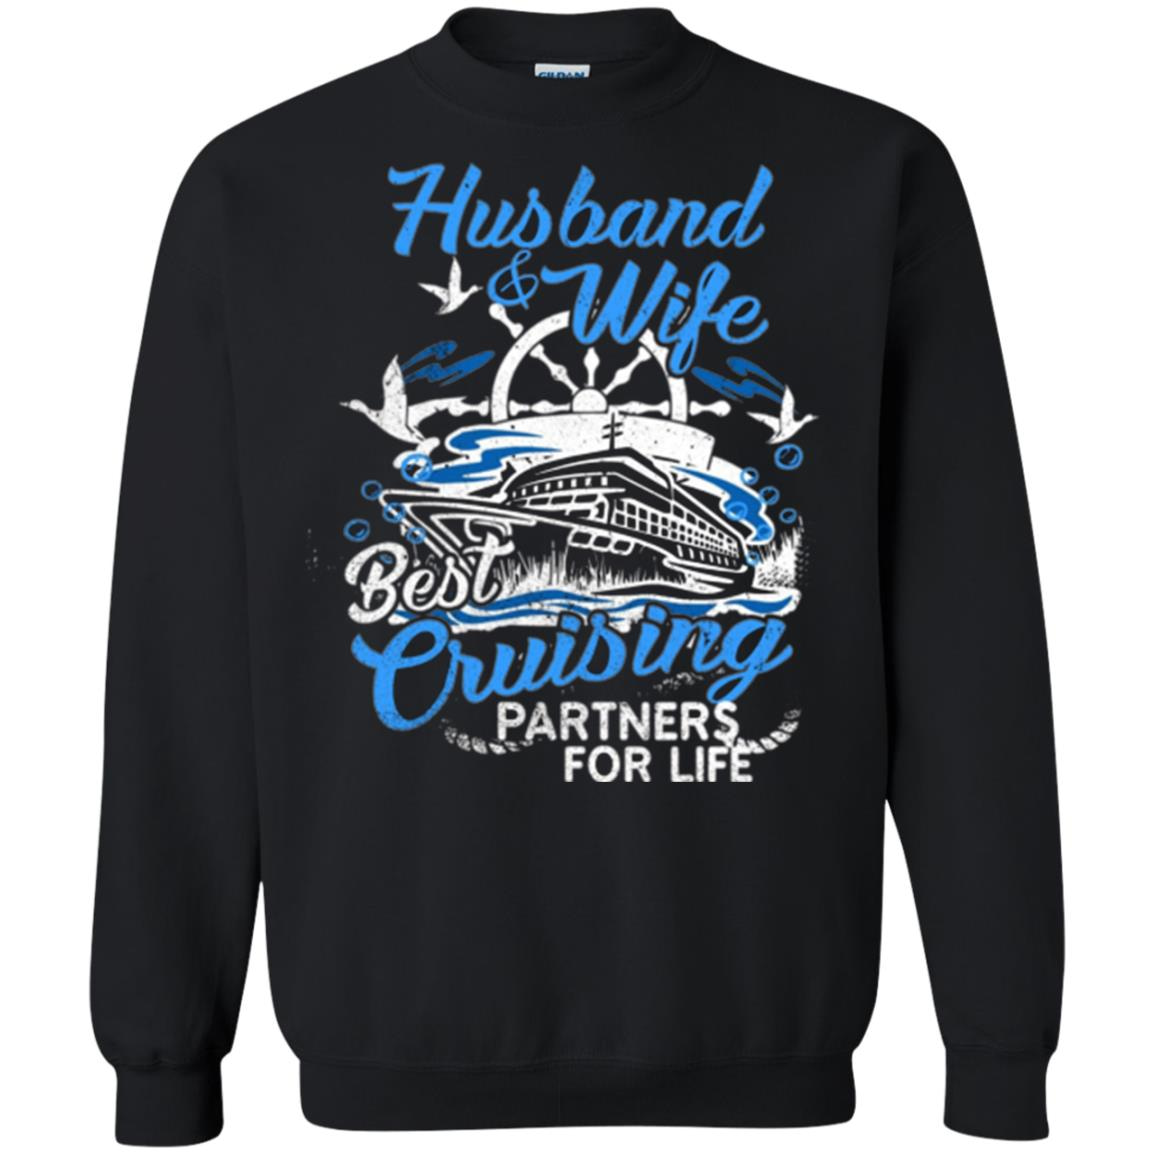 Inktee Store - Husband And Wife Cruising Partners Sweatshirt Image